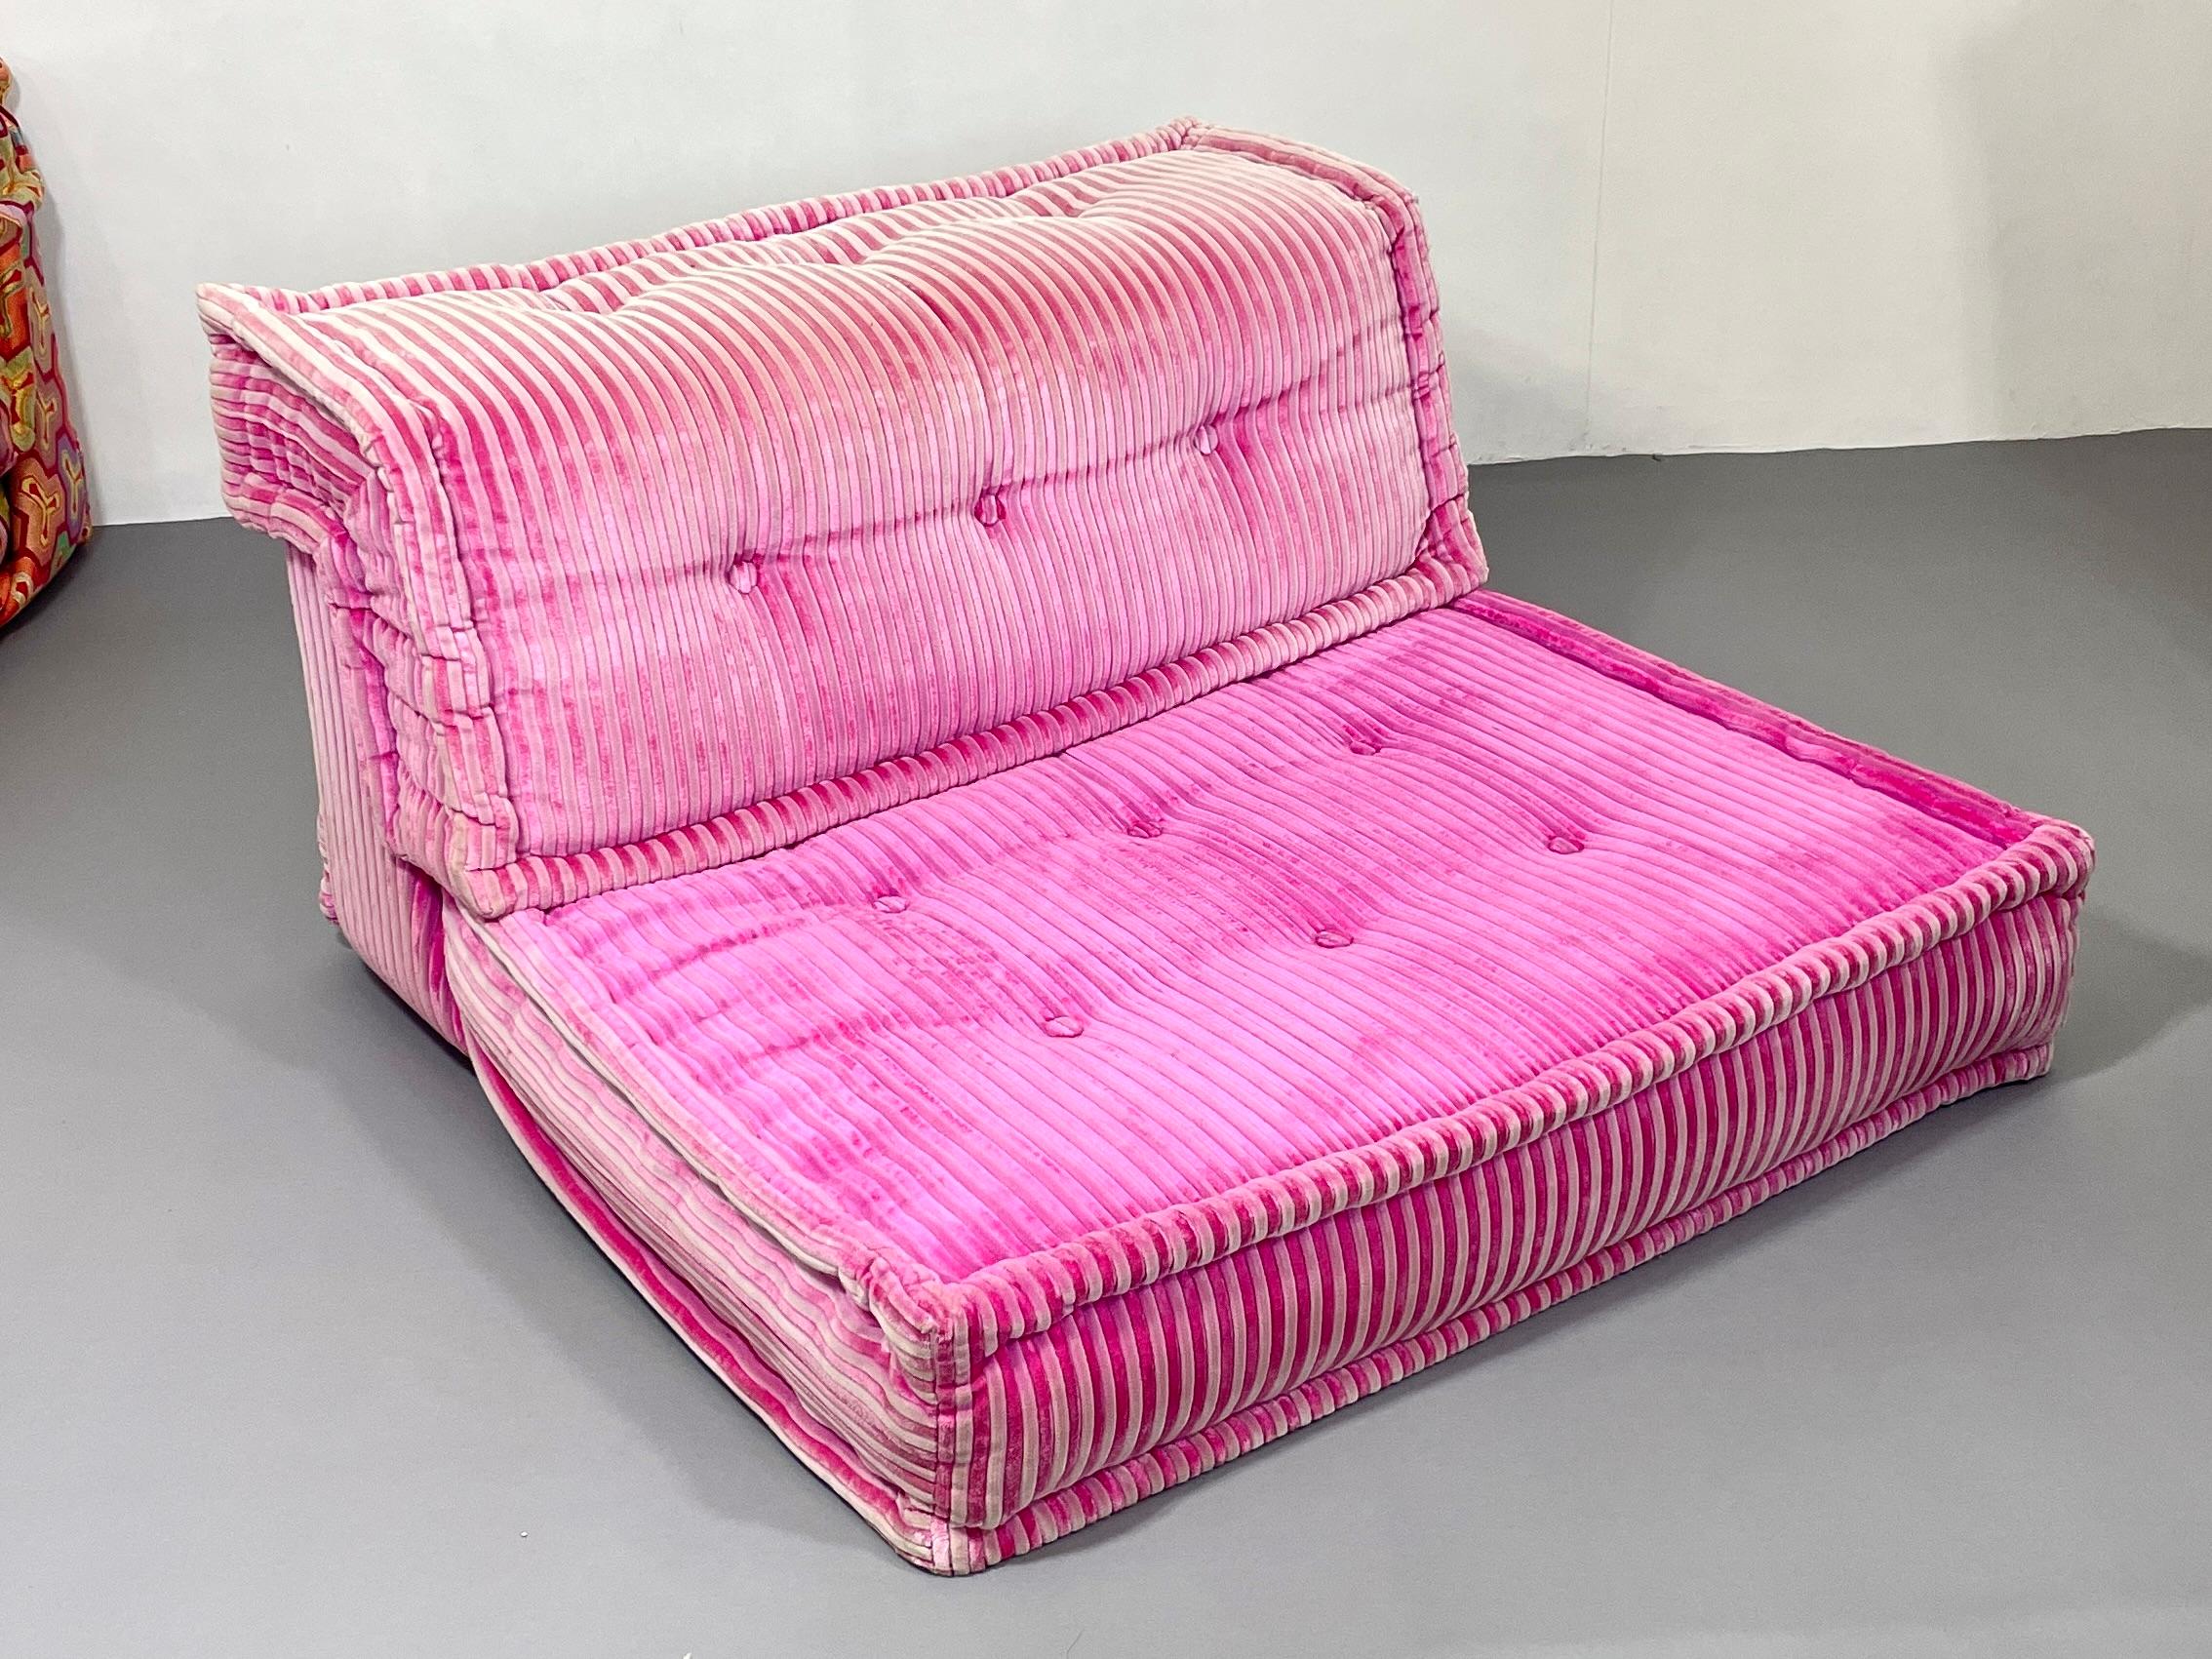 Mah jong sofa from Hans Hopfer for Roche Bobois design by Kenzo Takata  For Sale 5